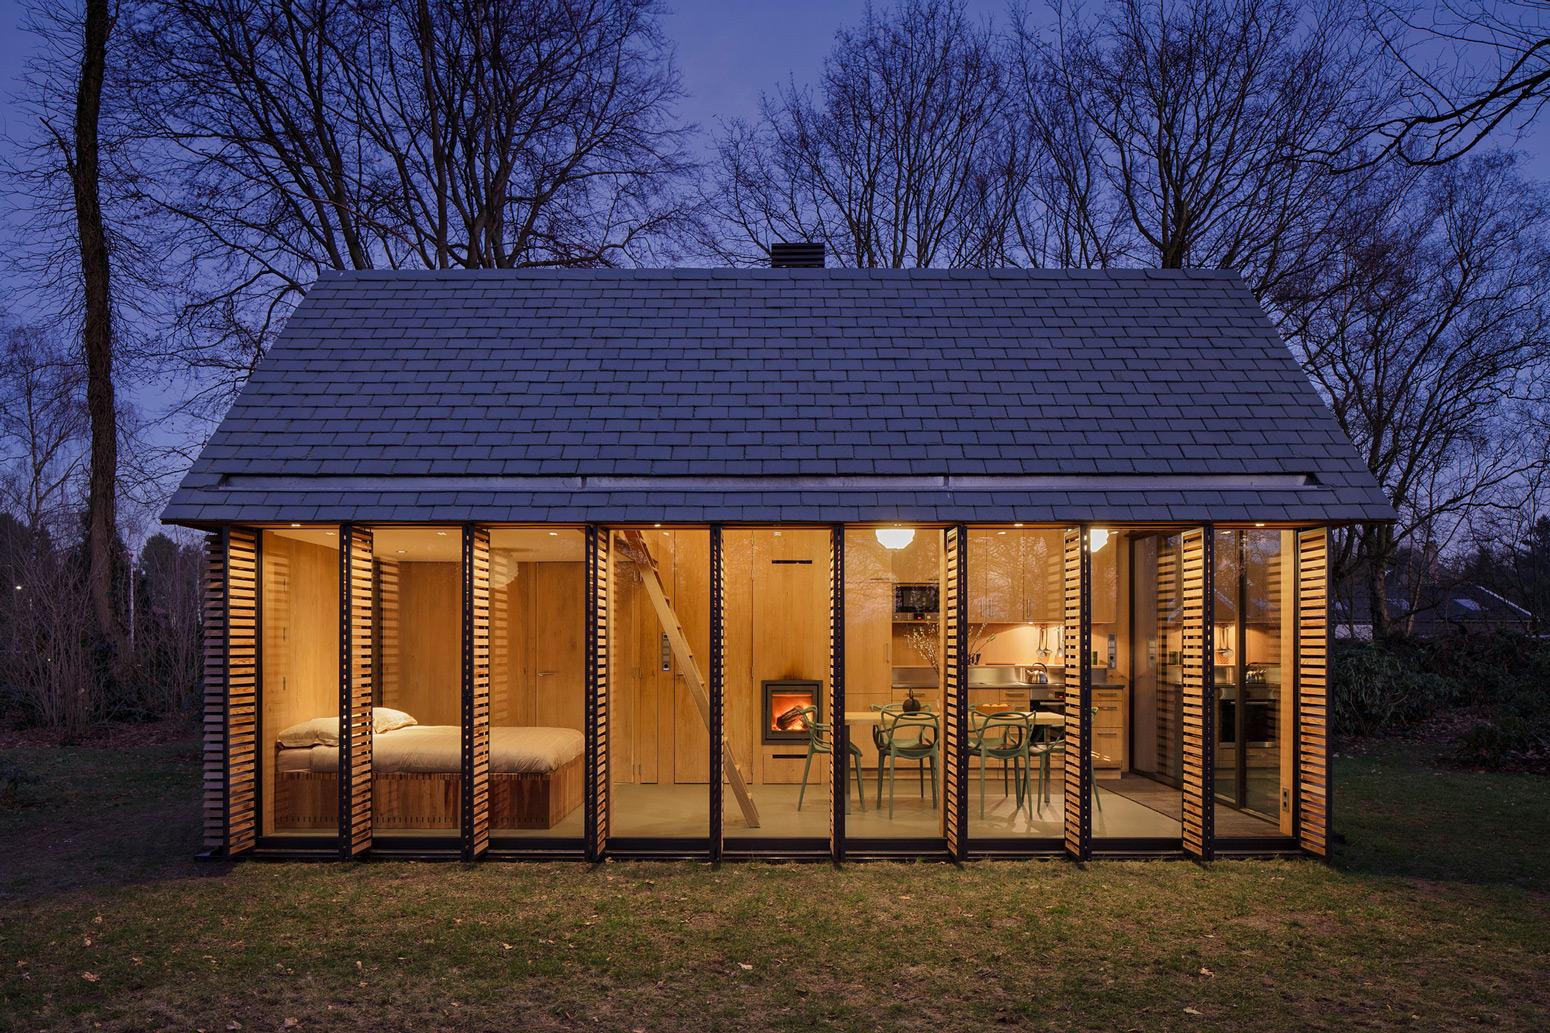 Recreationhouse / Roel van Norel + Zecc Architecten (6)